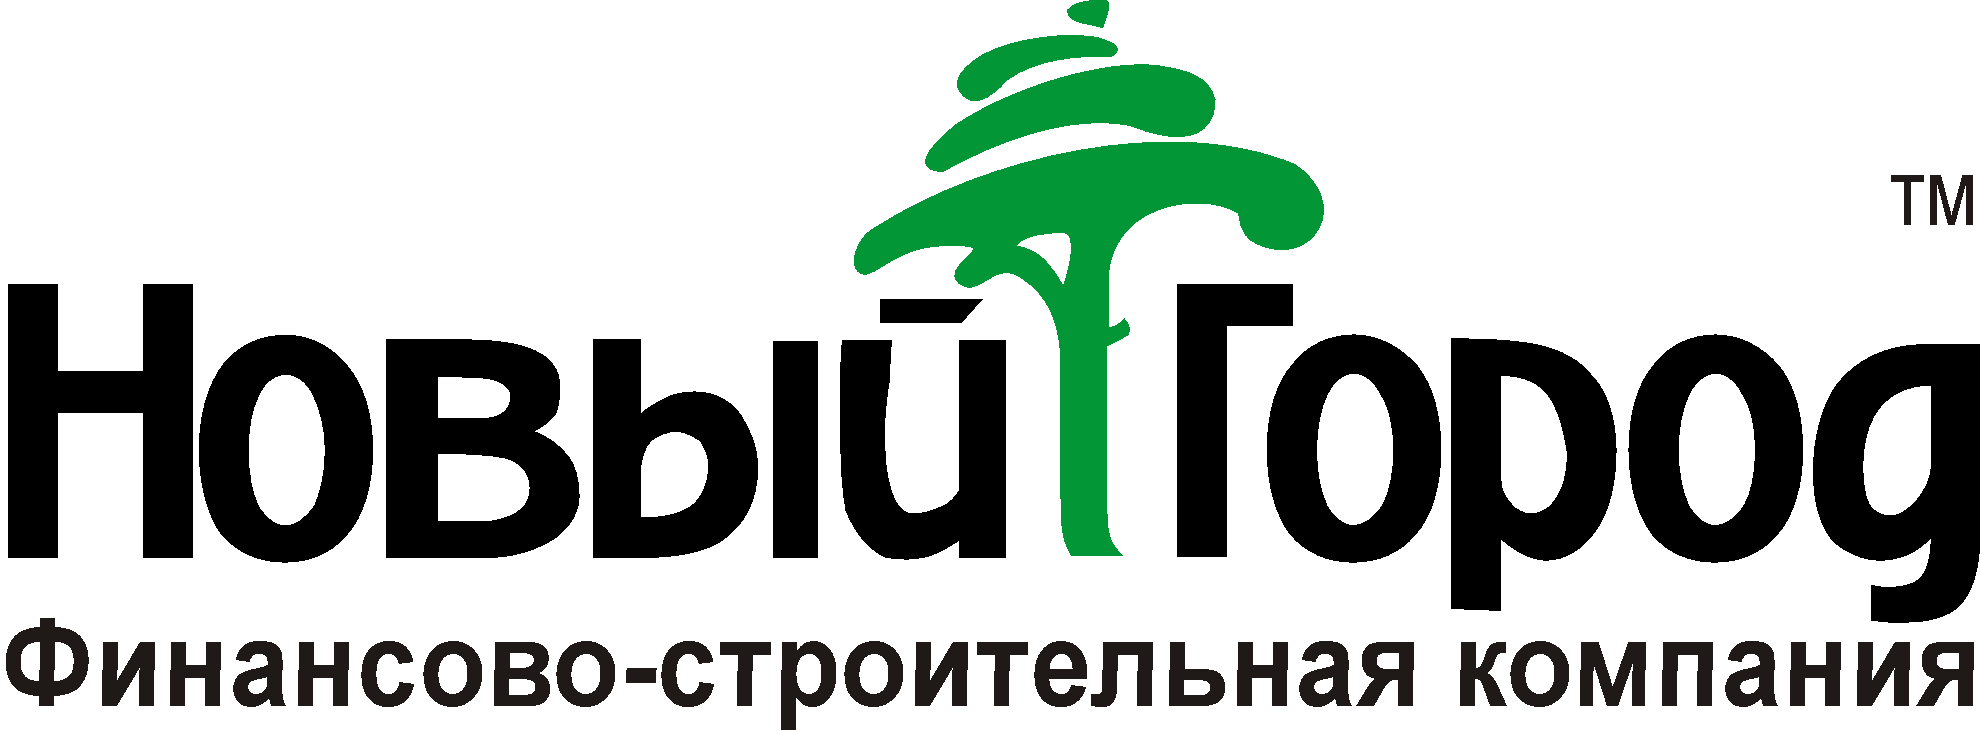 Компания скиньте. Новый город логотип Иркутск. Новый город компания. Логотип фирмы город. Логотип нового города.